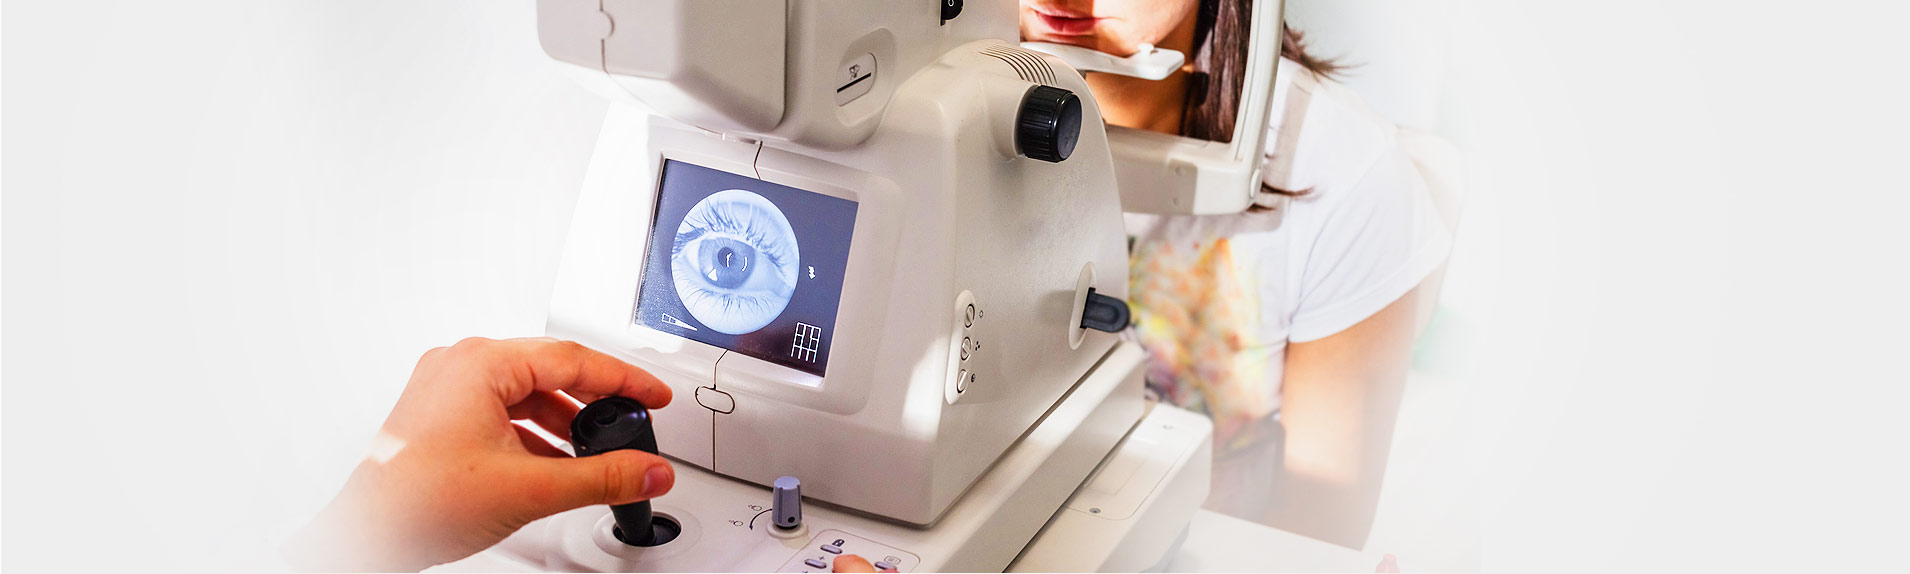 Poprawa konkurencyjności ALDEMED Centrum Medyczne poprzez rozbudowę Poradni Diagnostyki Obrazowej